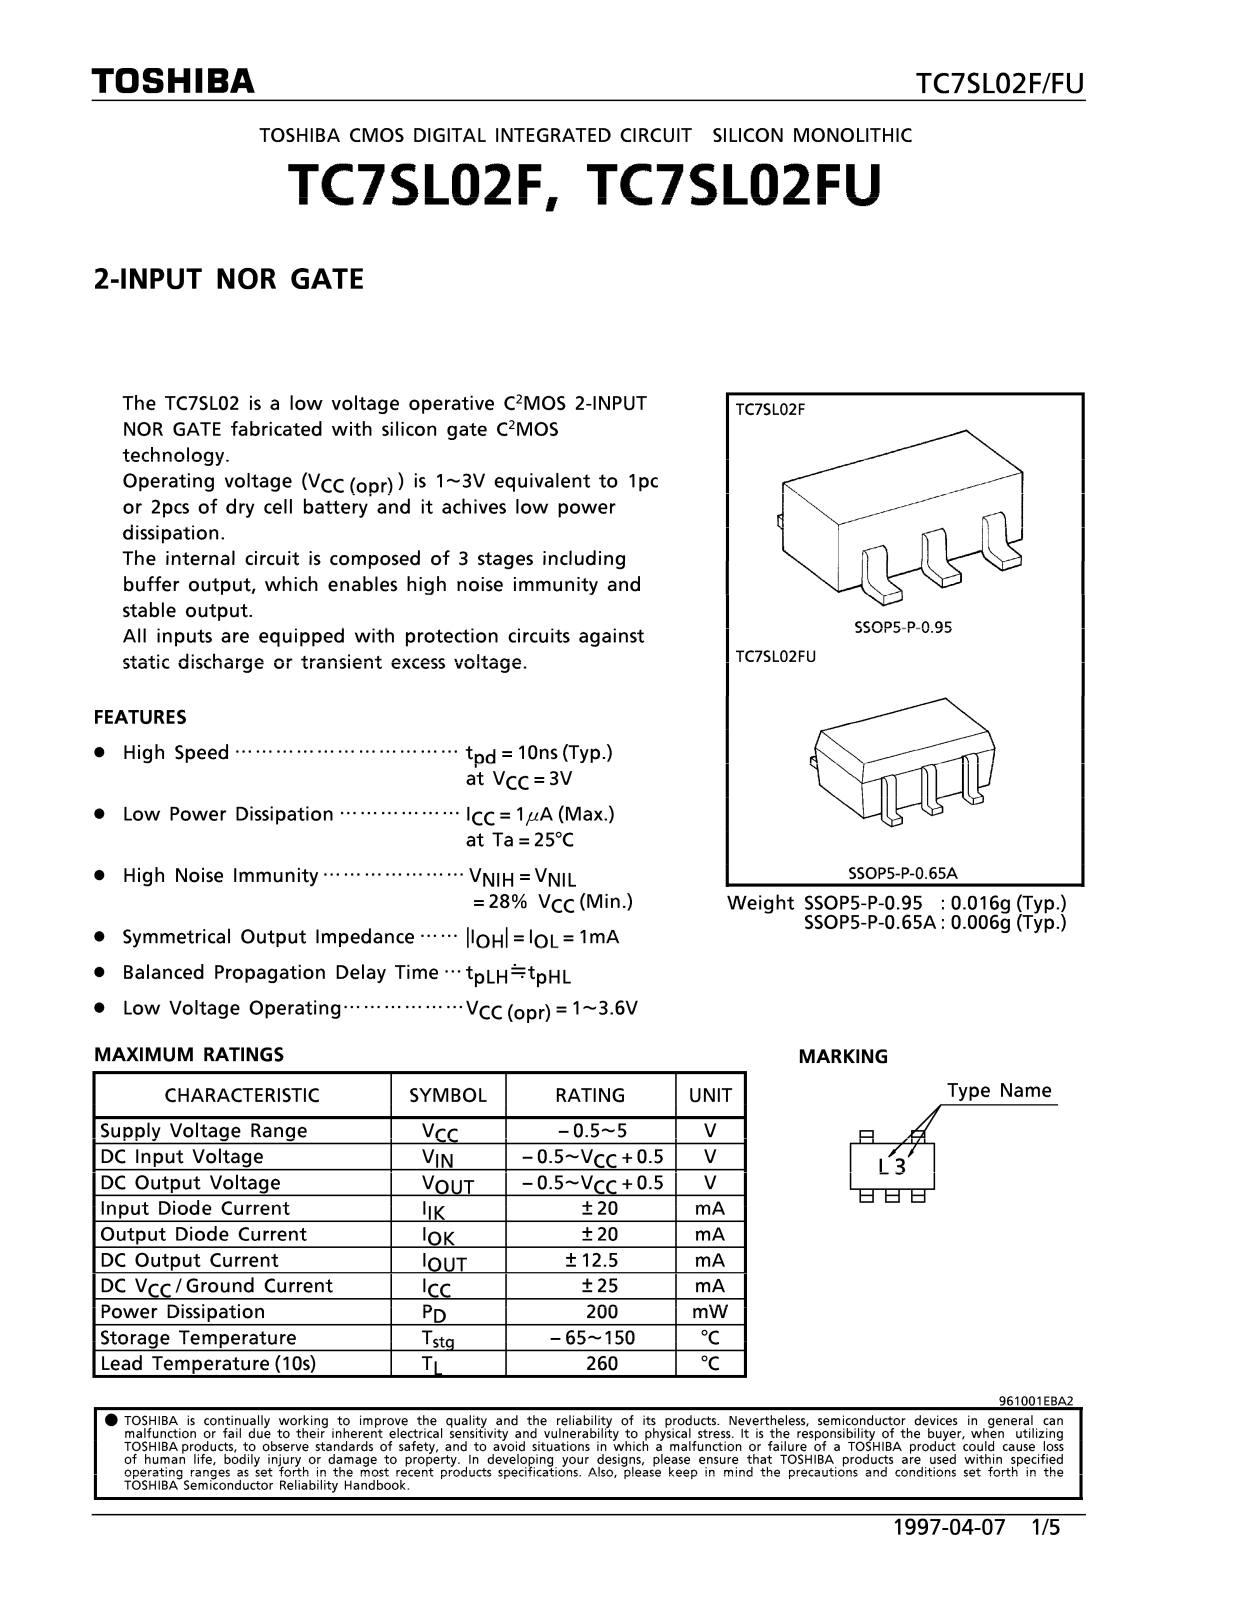 Toshiba TC7SL02FU, TC7SL02F Datasheet